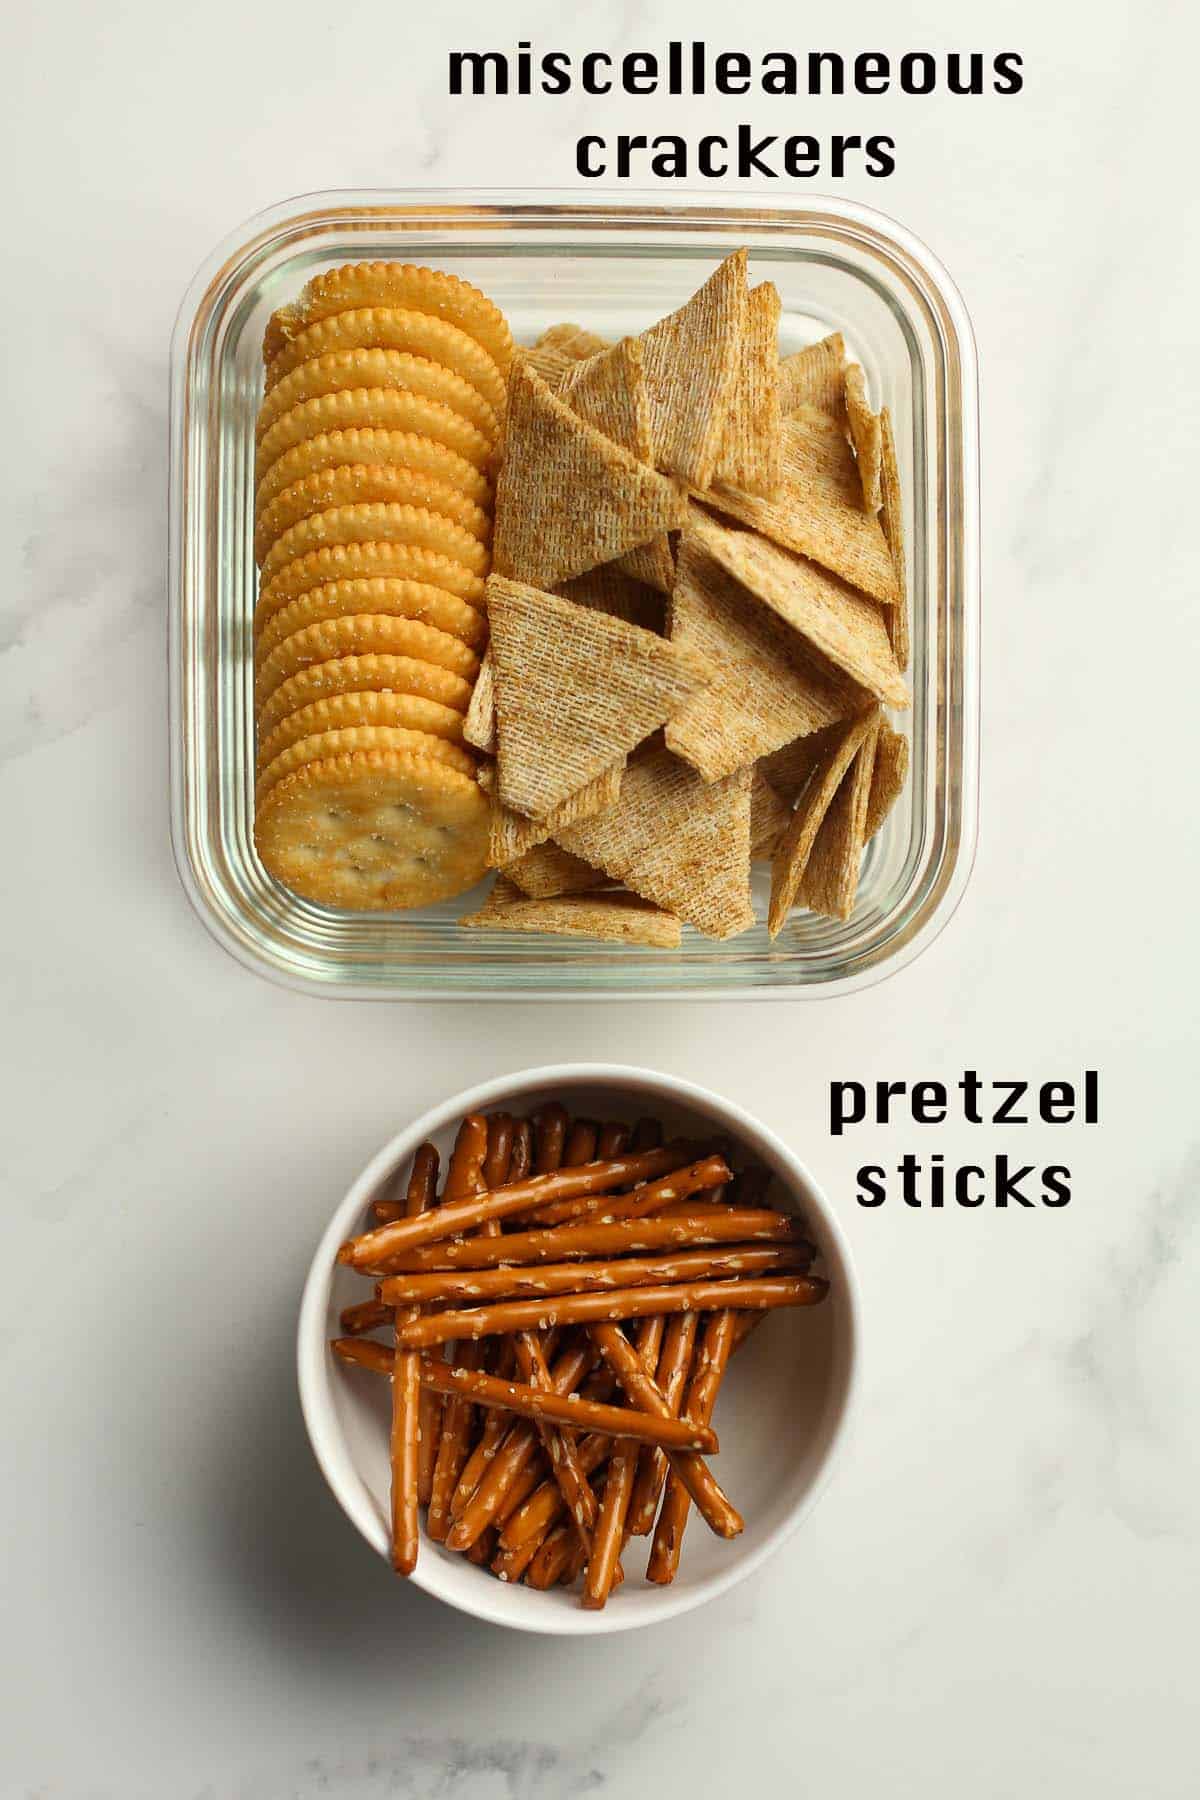 Bowls of crackers and pretzels